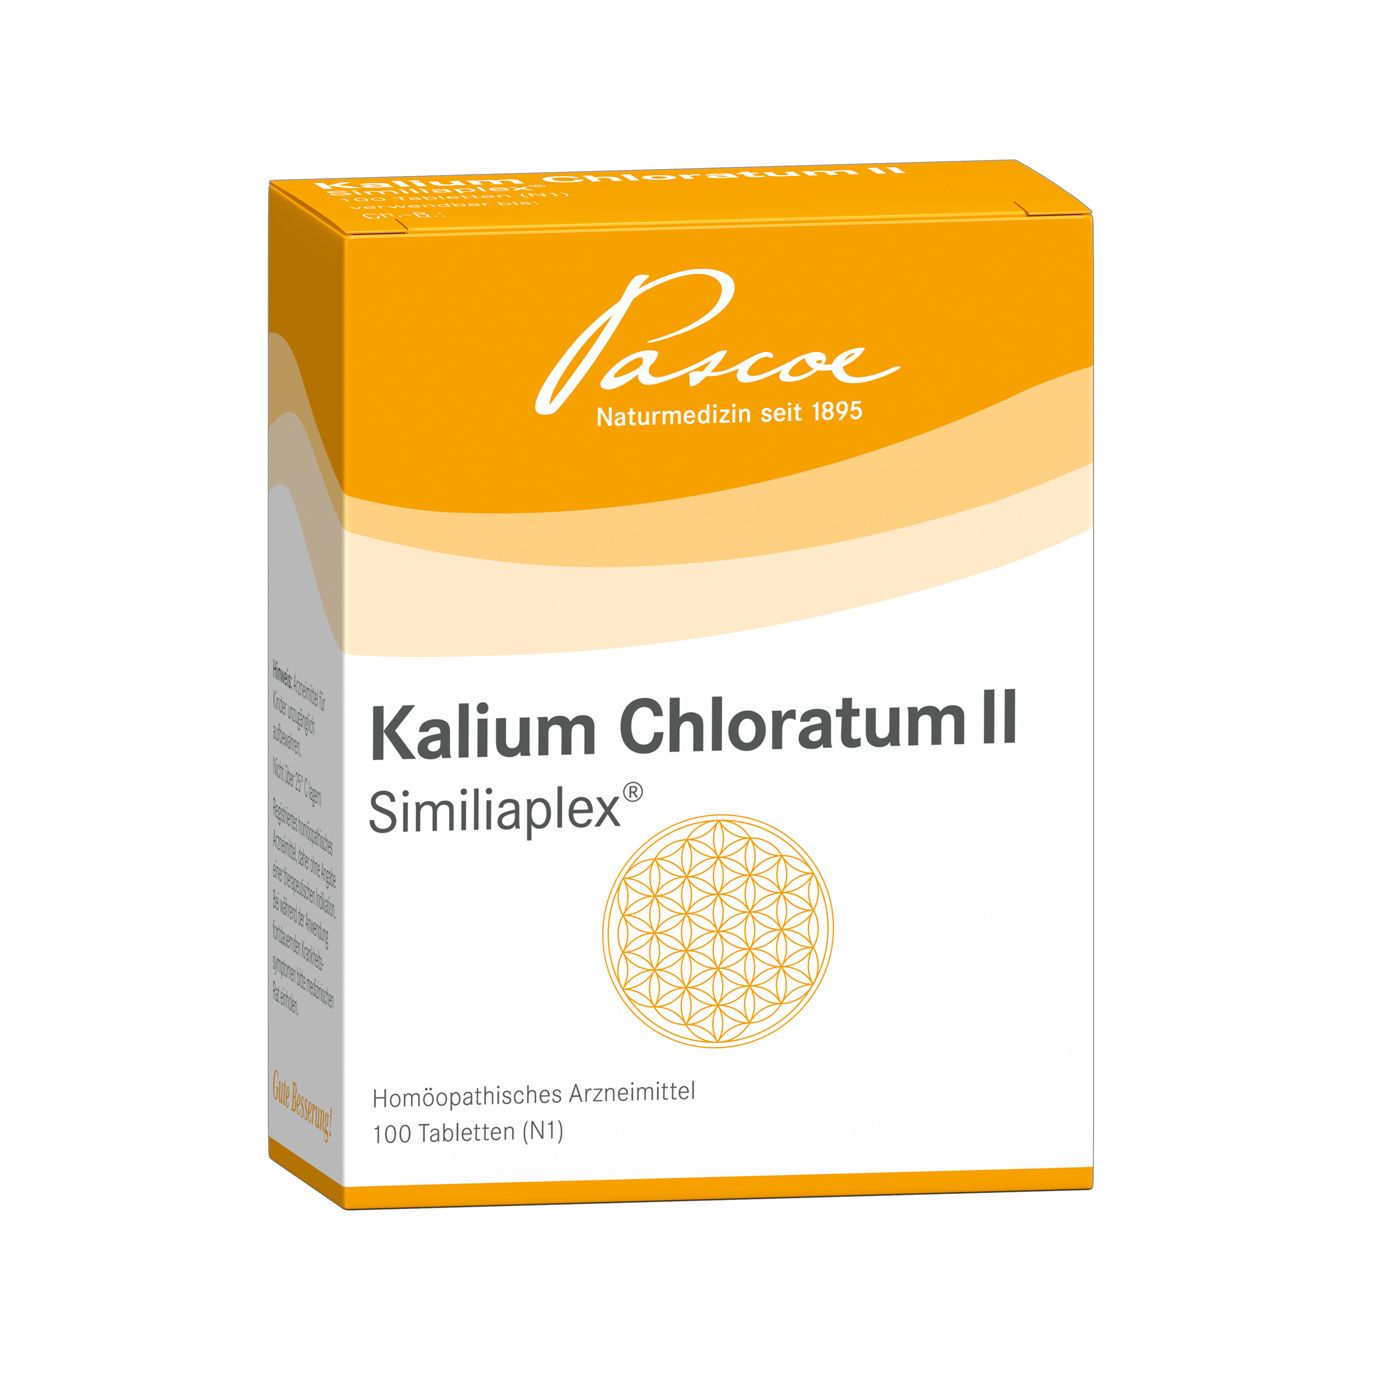 Kamlium Chloratium II Similiaplex®